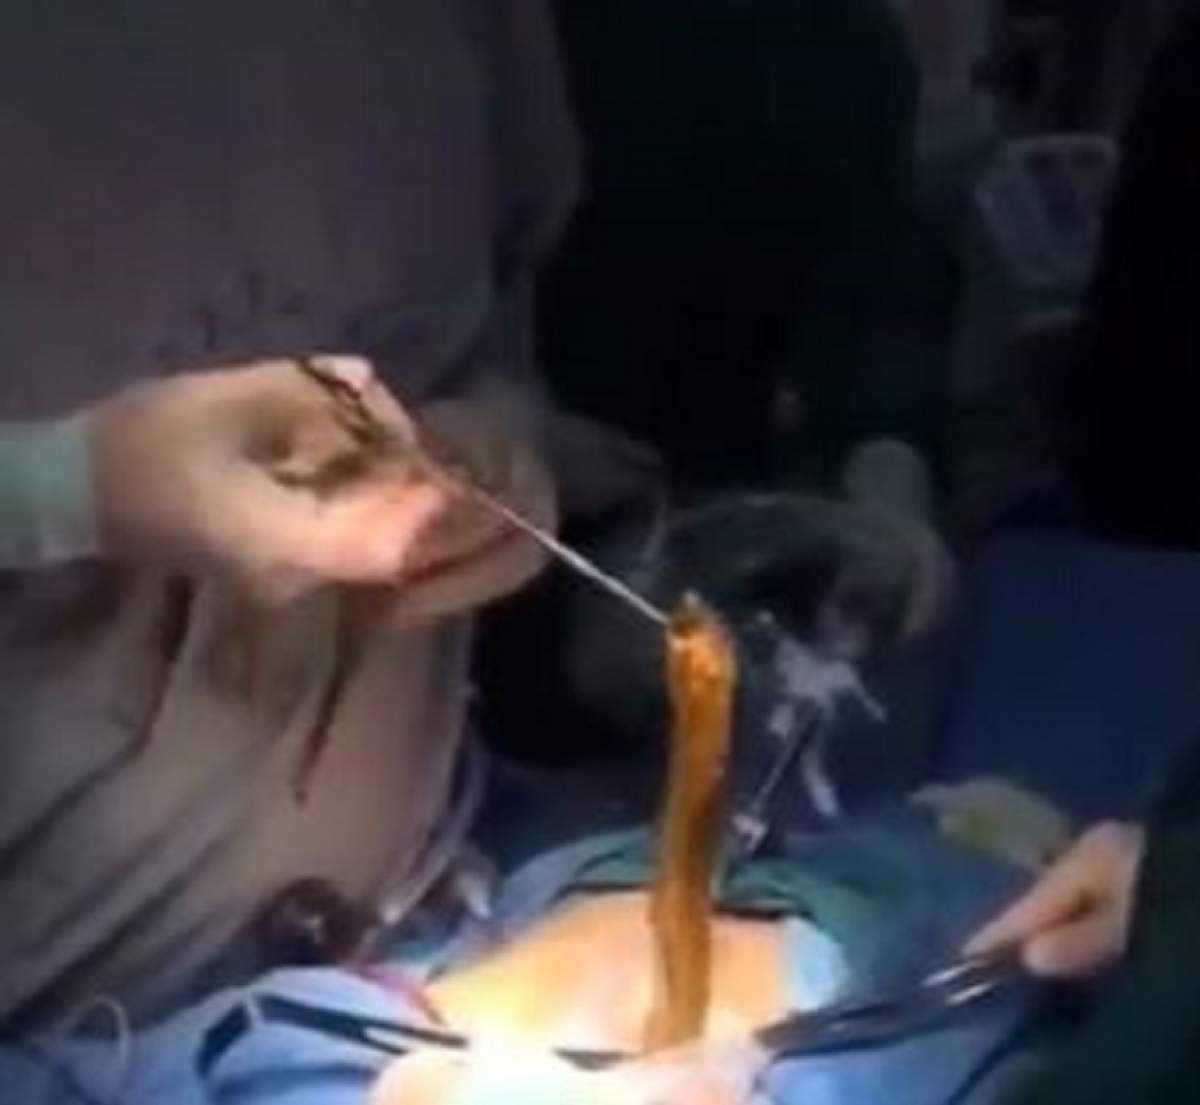 VIDEO / Doctorii l-au operat și i-au scos o anghilă din stomac! Imaginile sunt greu de privit